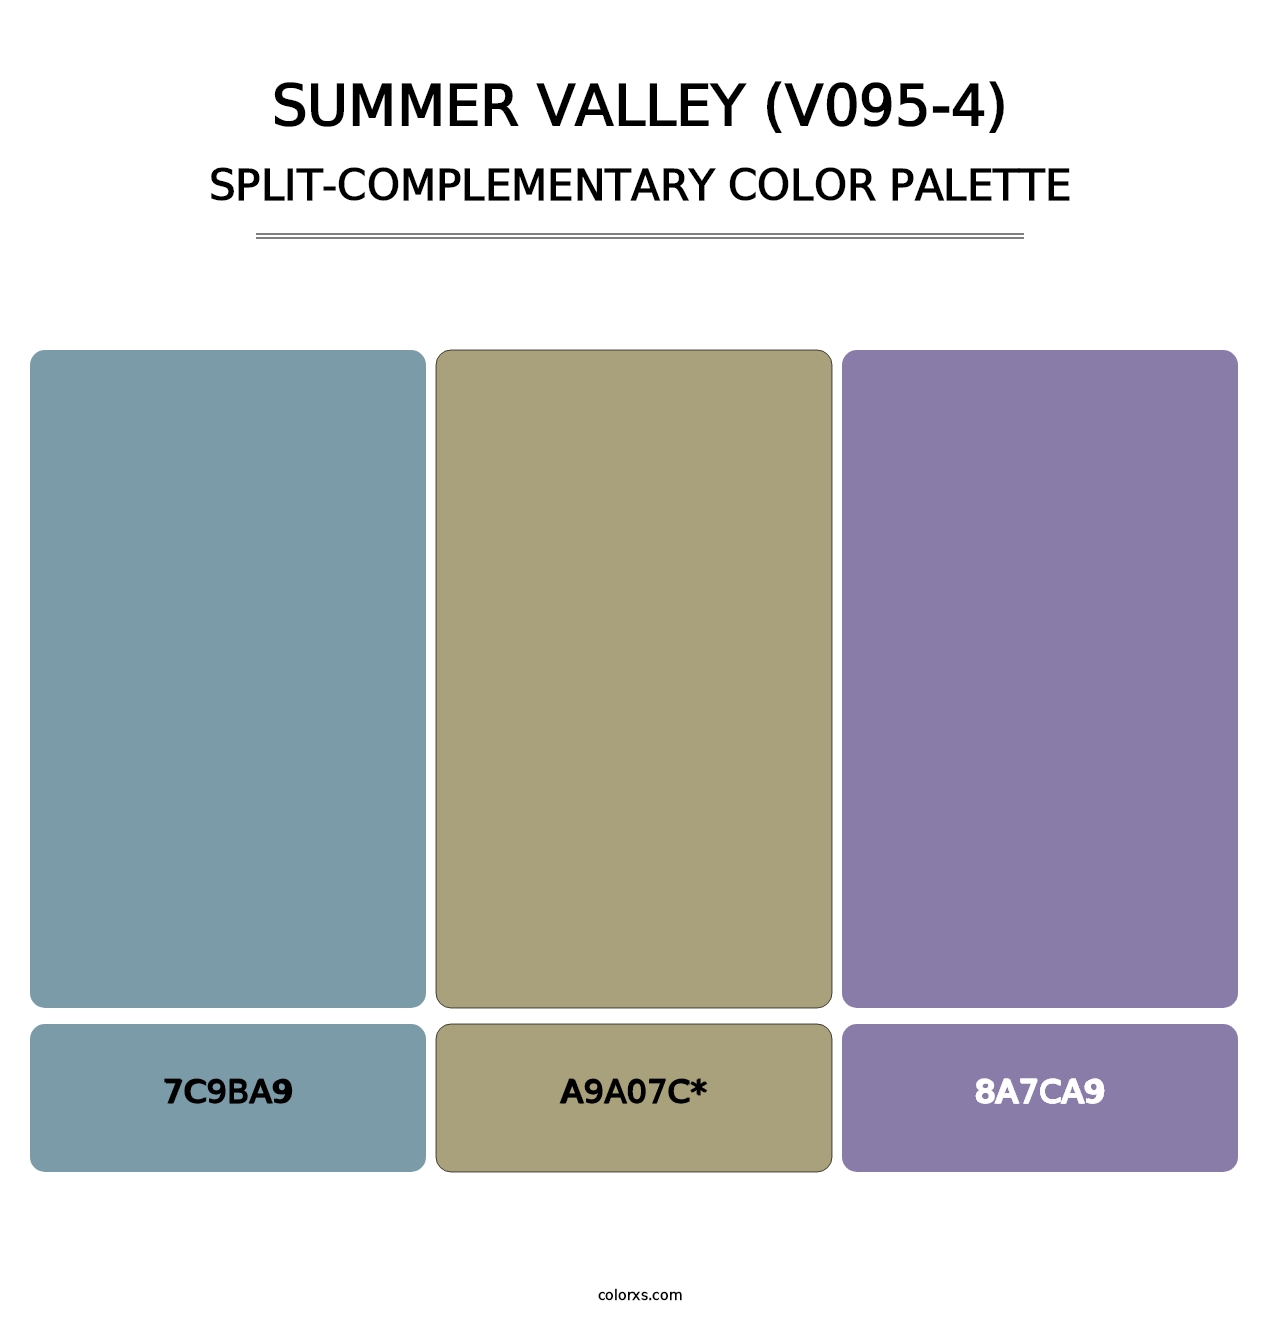 Summer Valley (V095-4) - Split-Complementary Color Palette